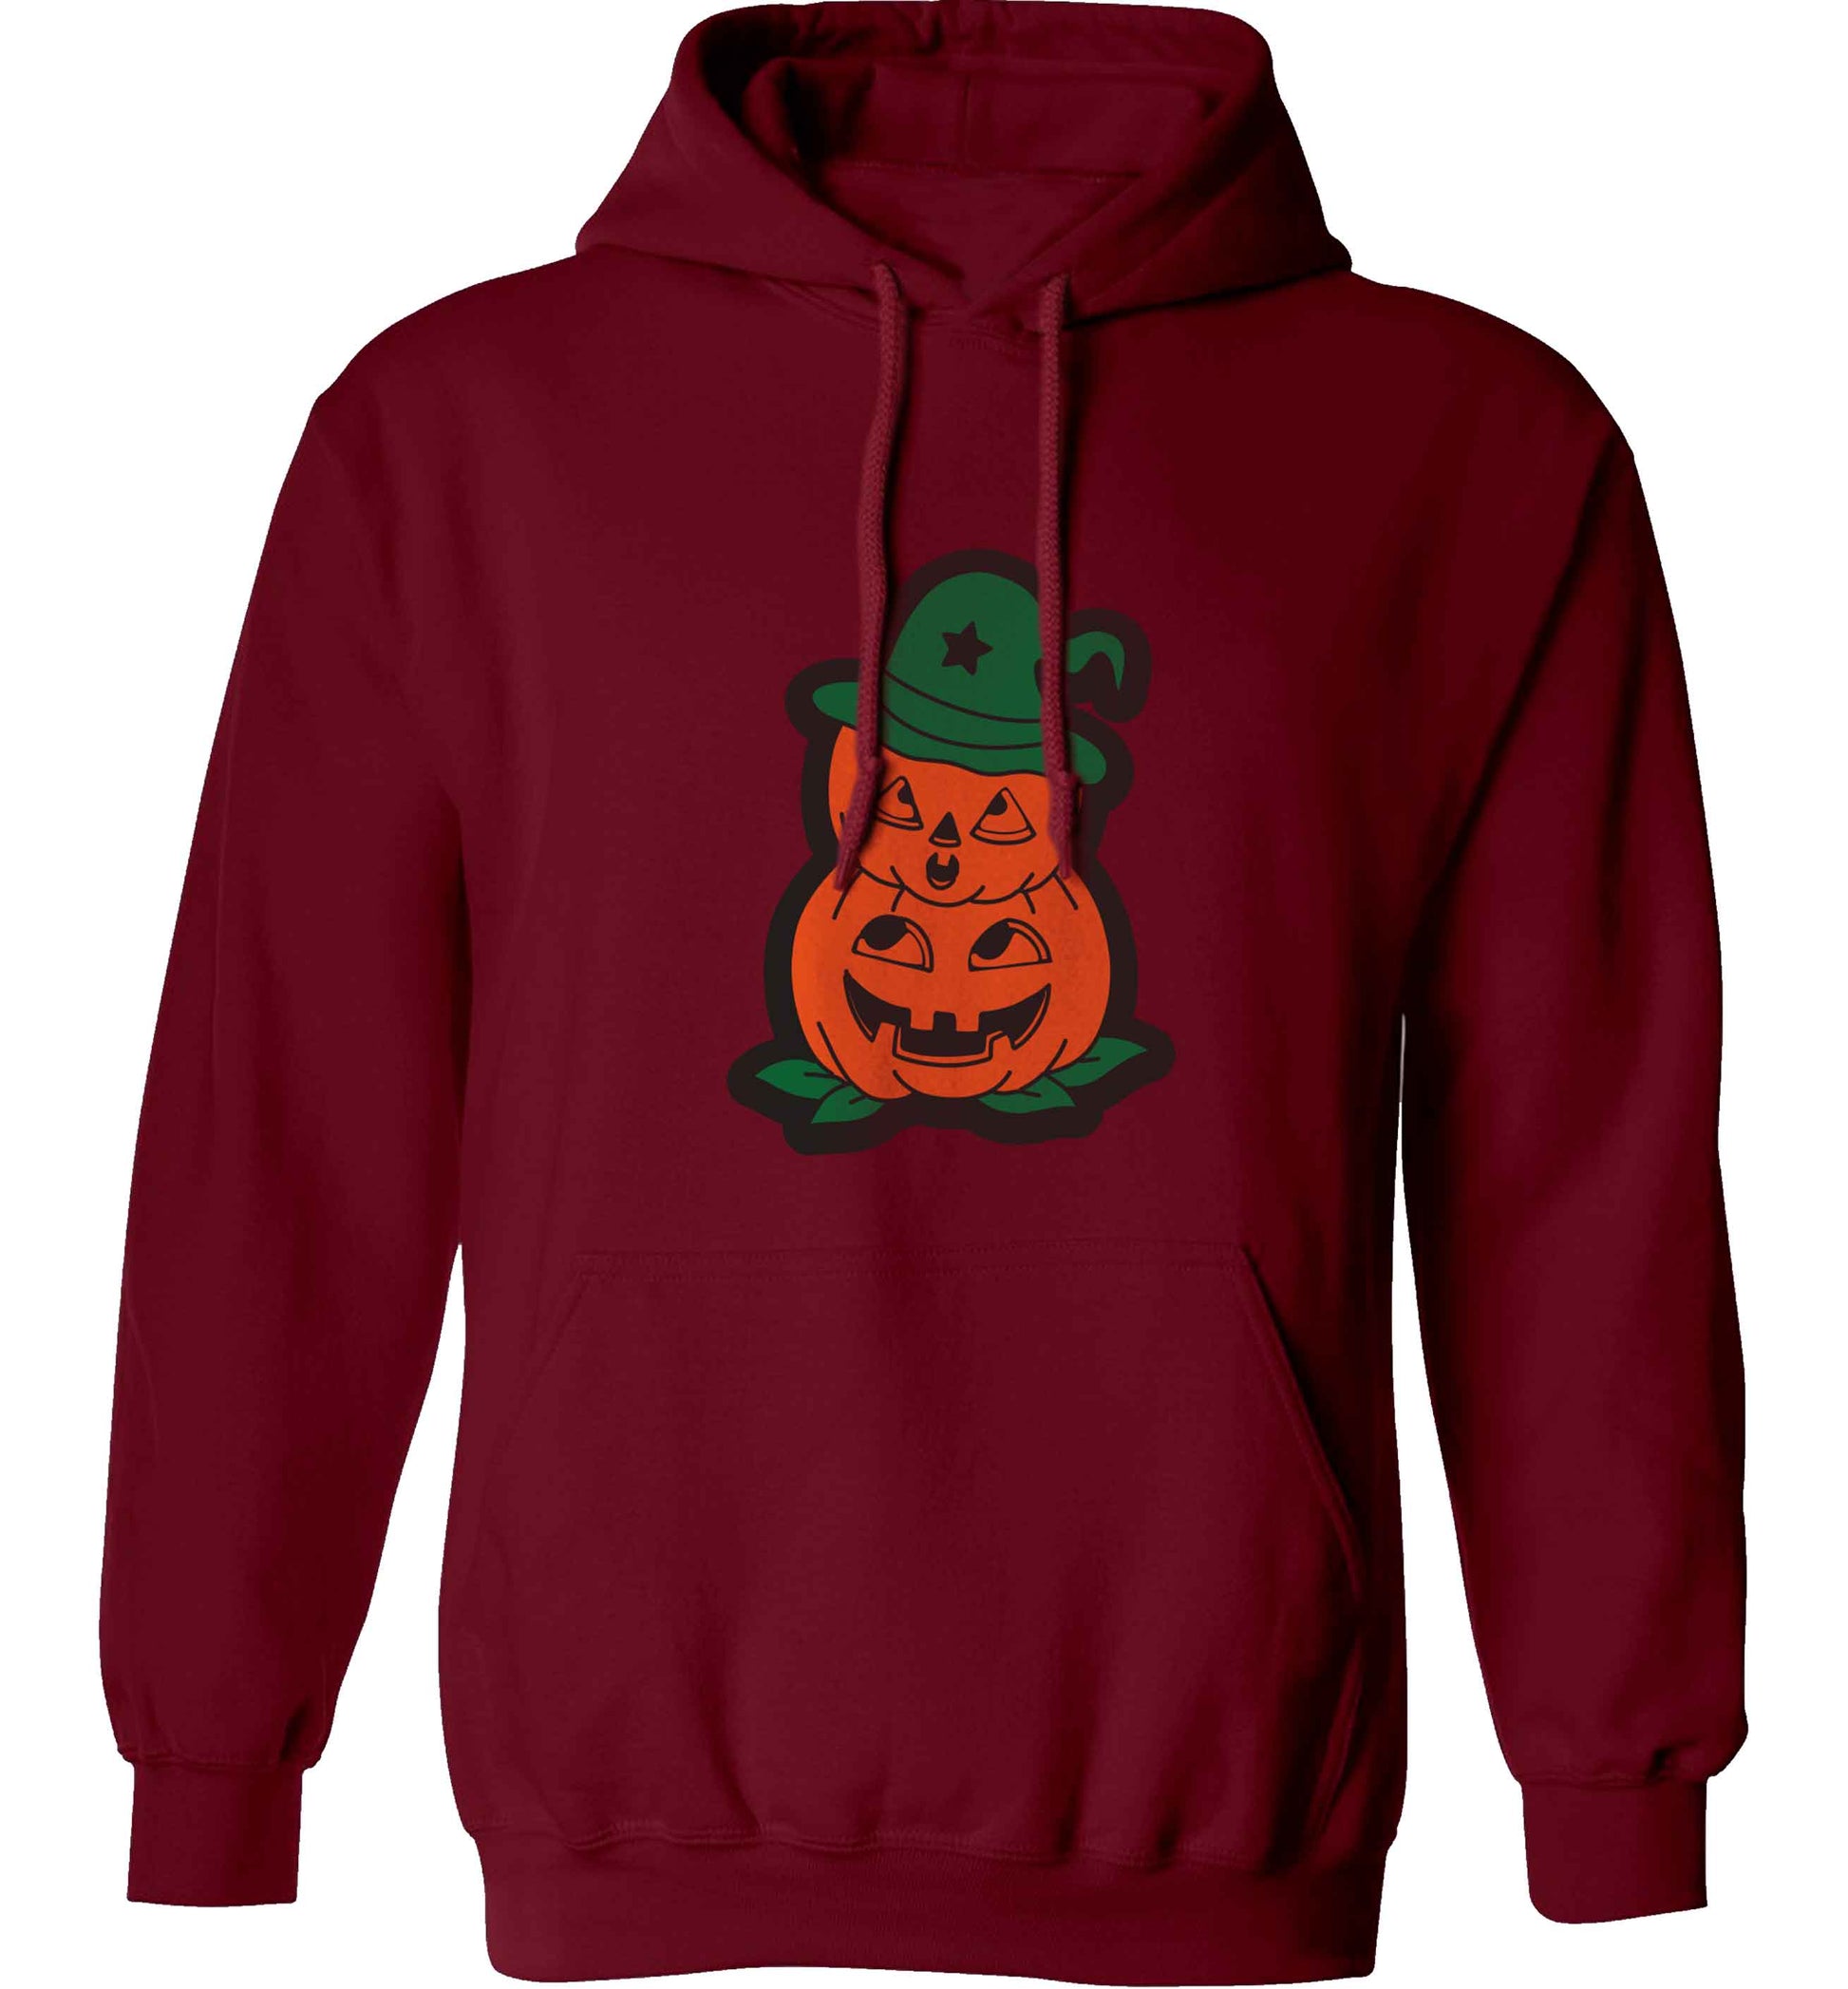 Pumpkin stack Kit adults unisex maroon hoodie 2XL